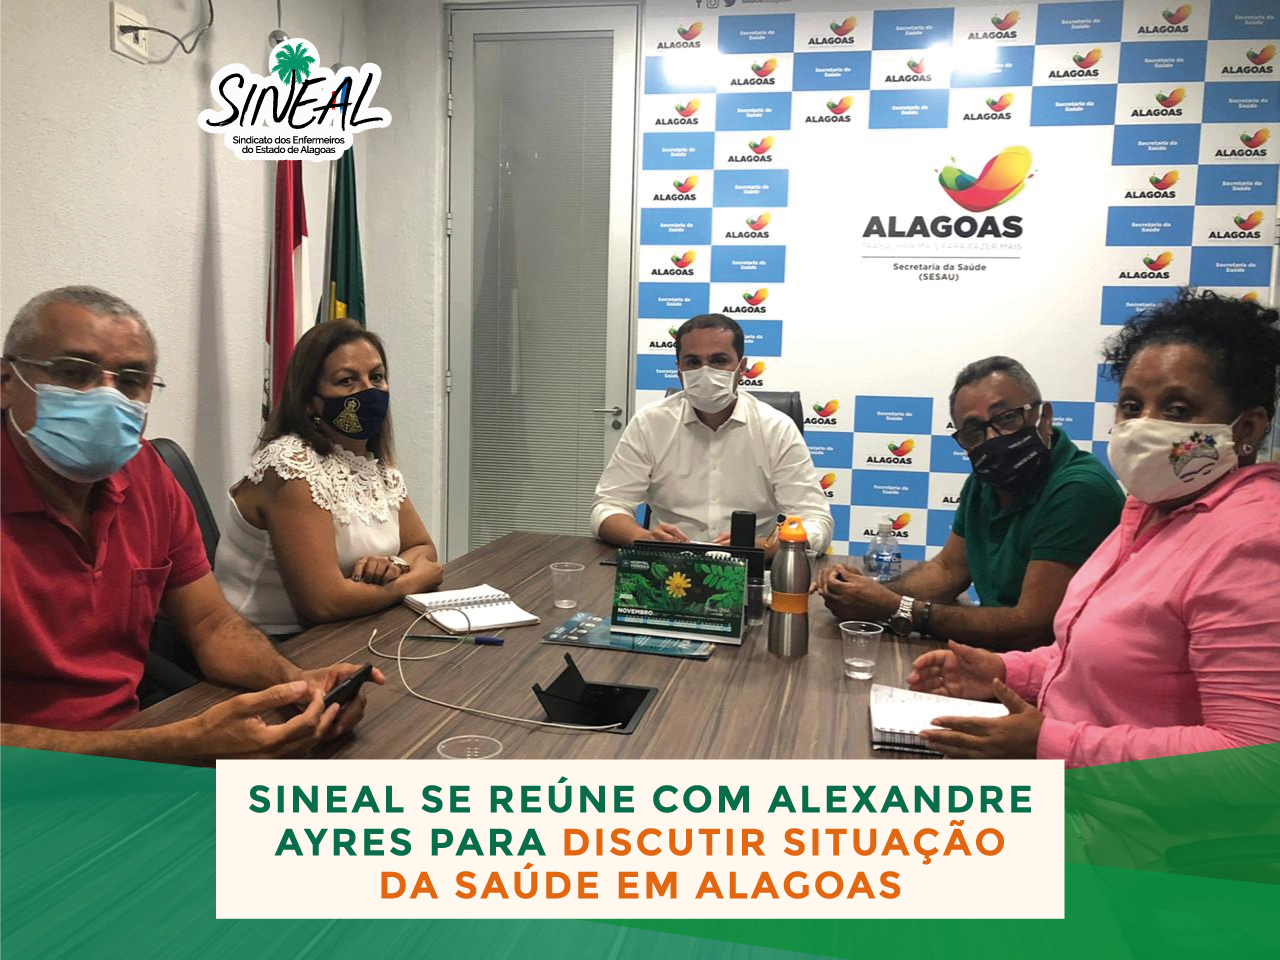 Sineal se reúne com Alexandre Ayres para discutir situação da saúde em Alagoas